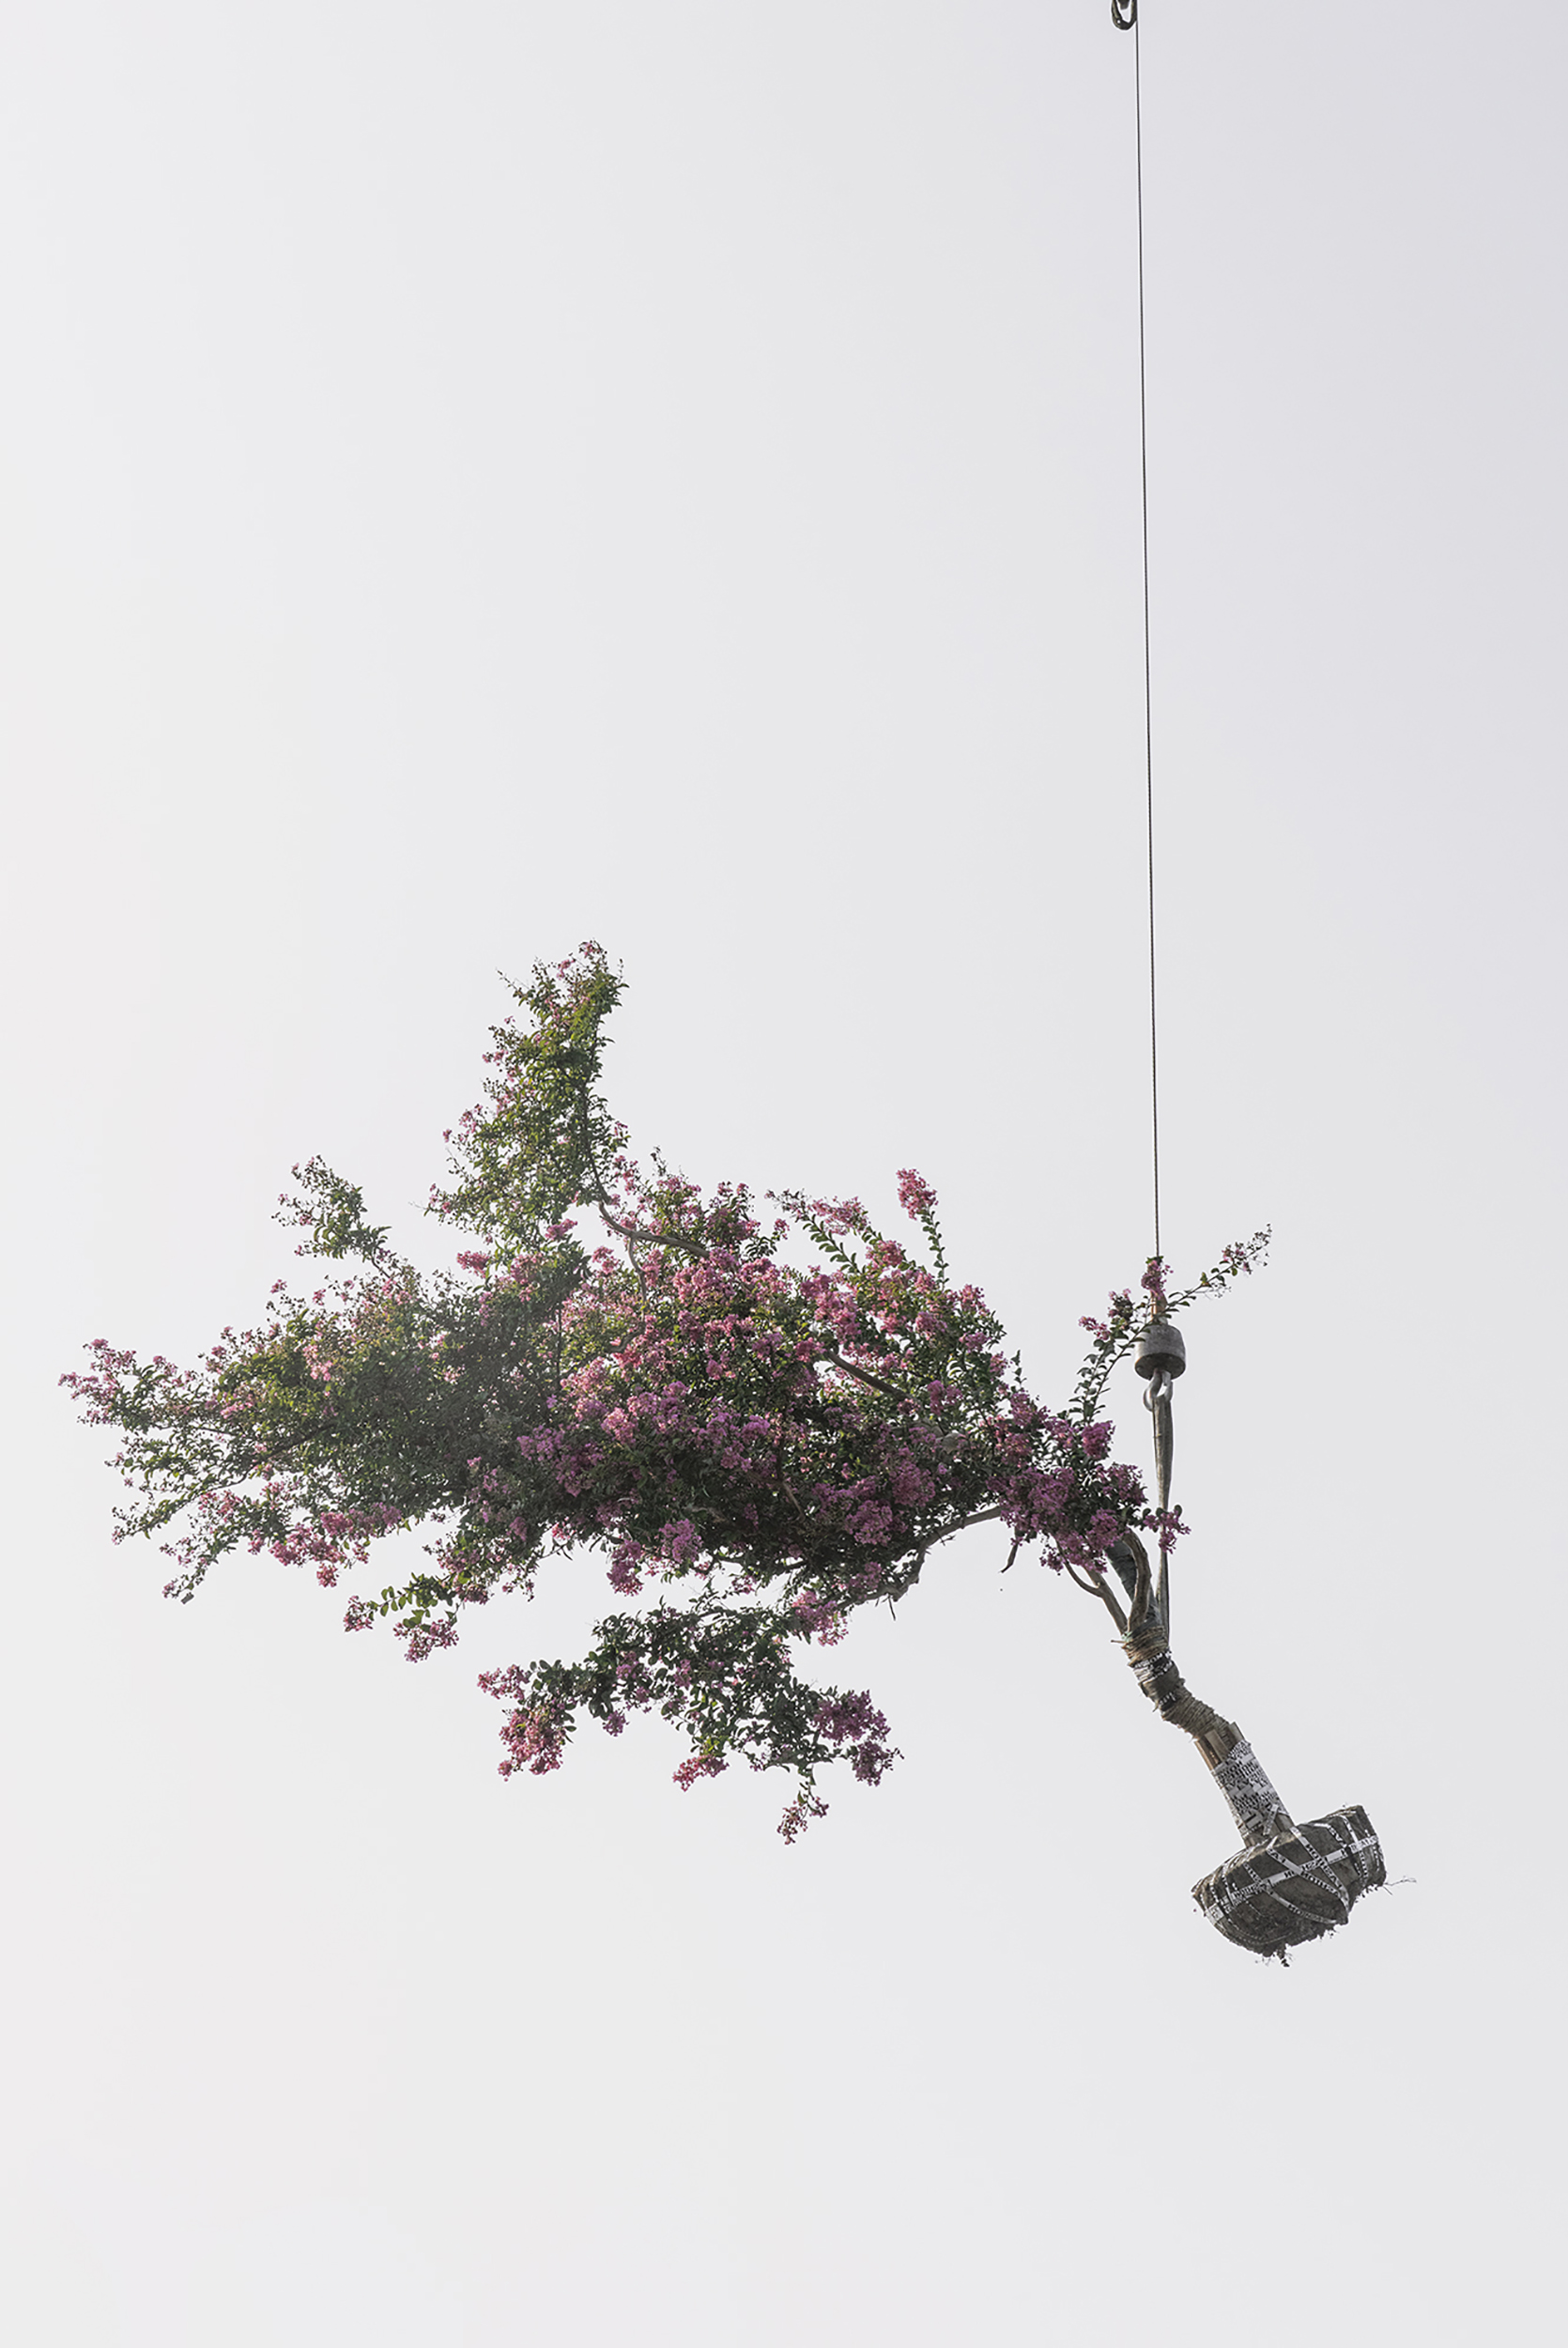 Zhang Kechun, The Sky Garden - tree (00093), 2021, Courtesy Zhang Kechun PARIS-B